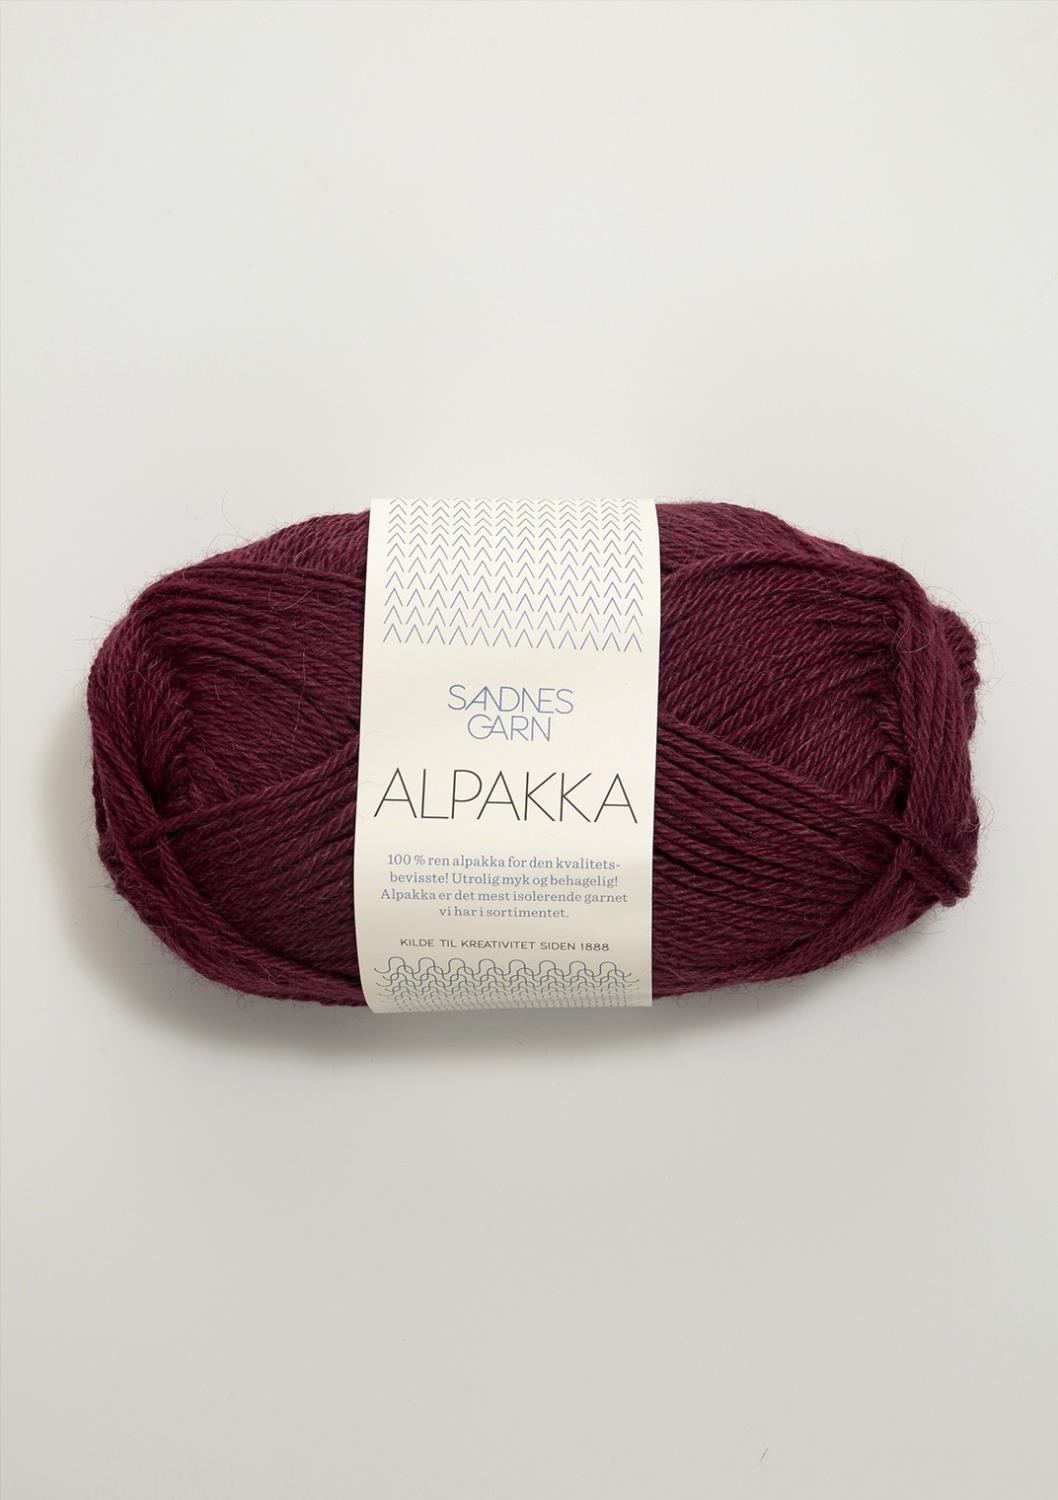 Alpakka Sandnes 4554 - Vinrød